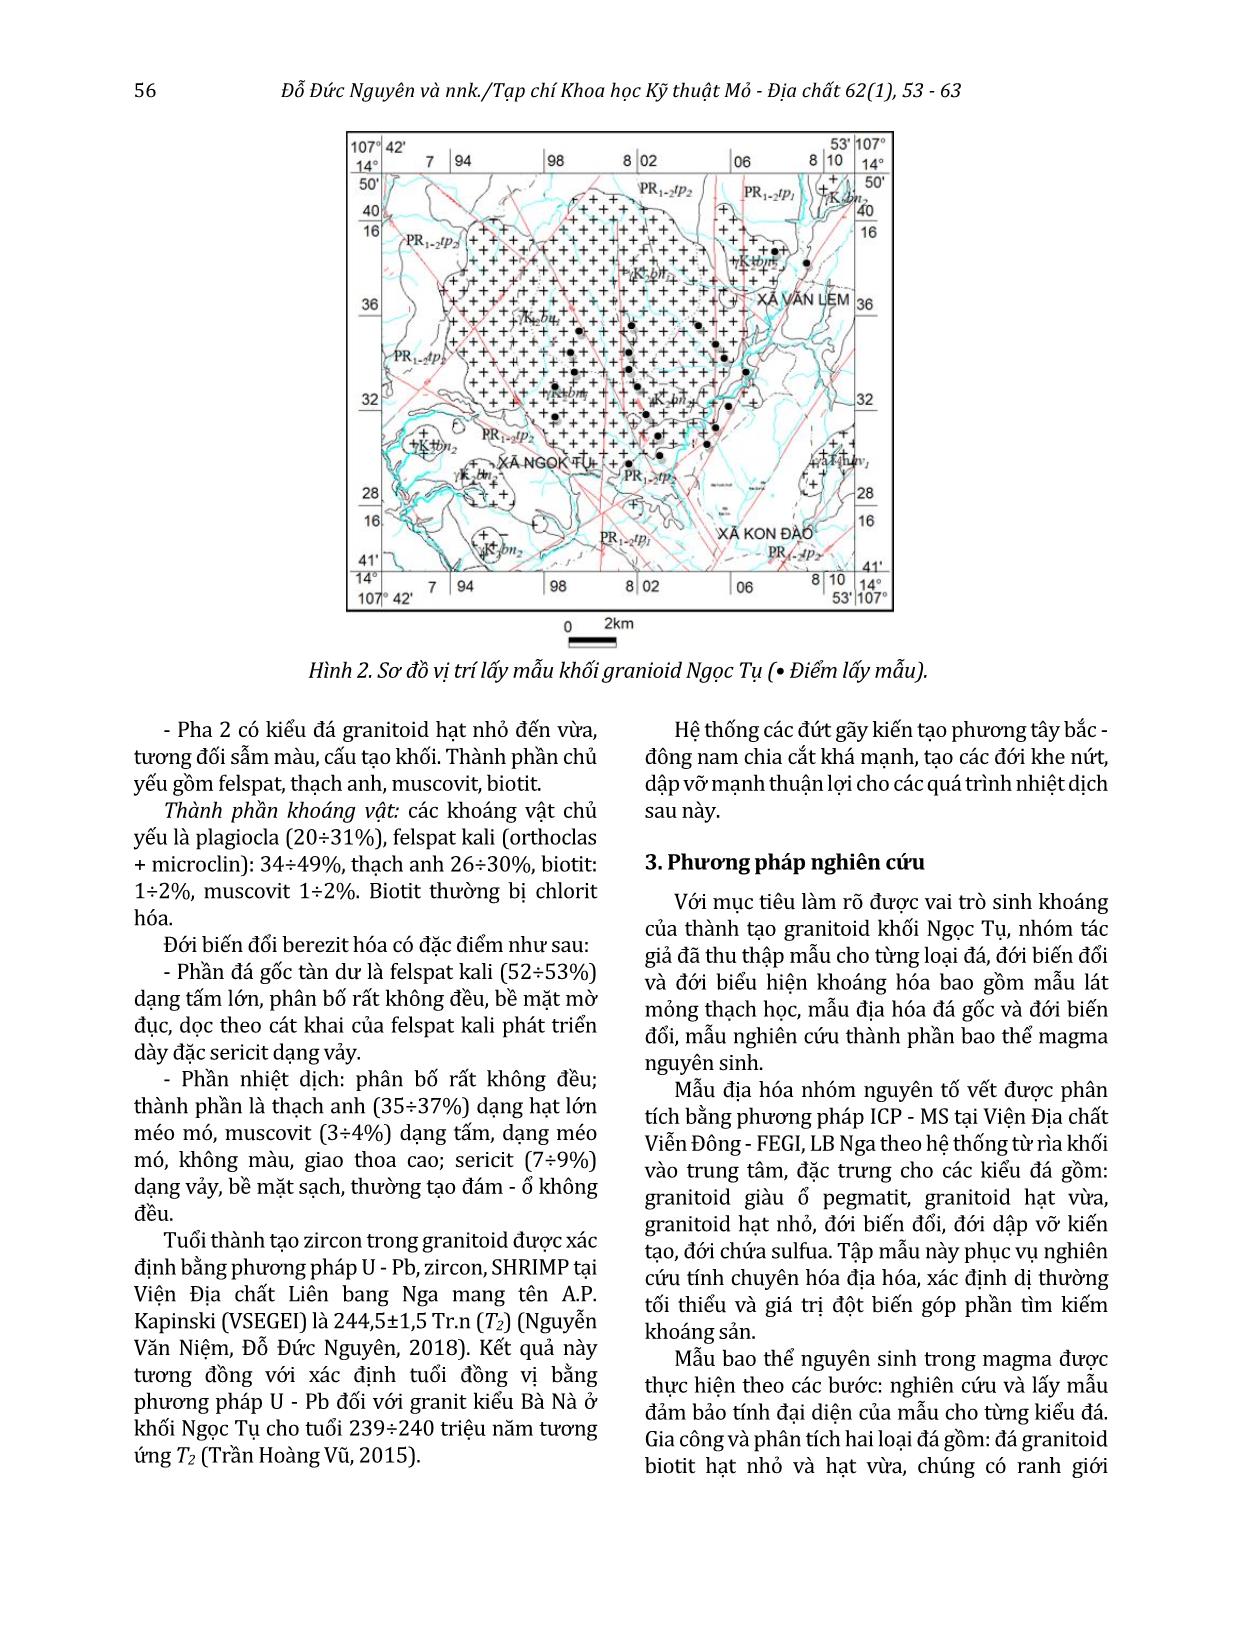 Đặc tính môi trường oxy hóa - khử của granitoid khối Ngọc Tụ và tính chuyên hóa địa hóa của chúng trang 4